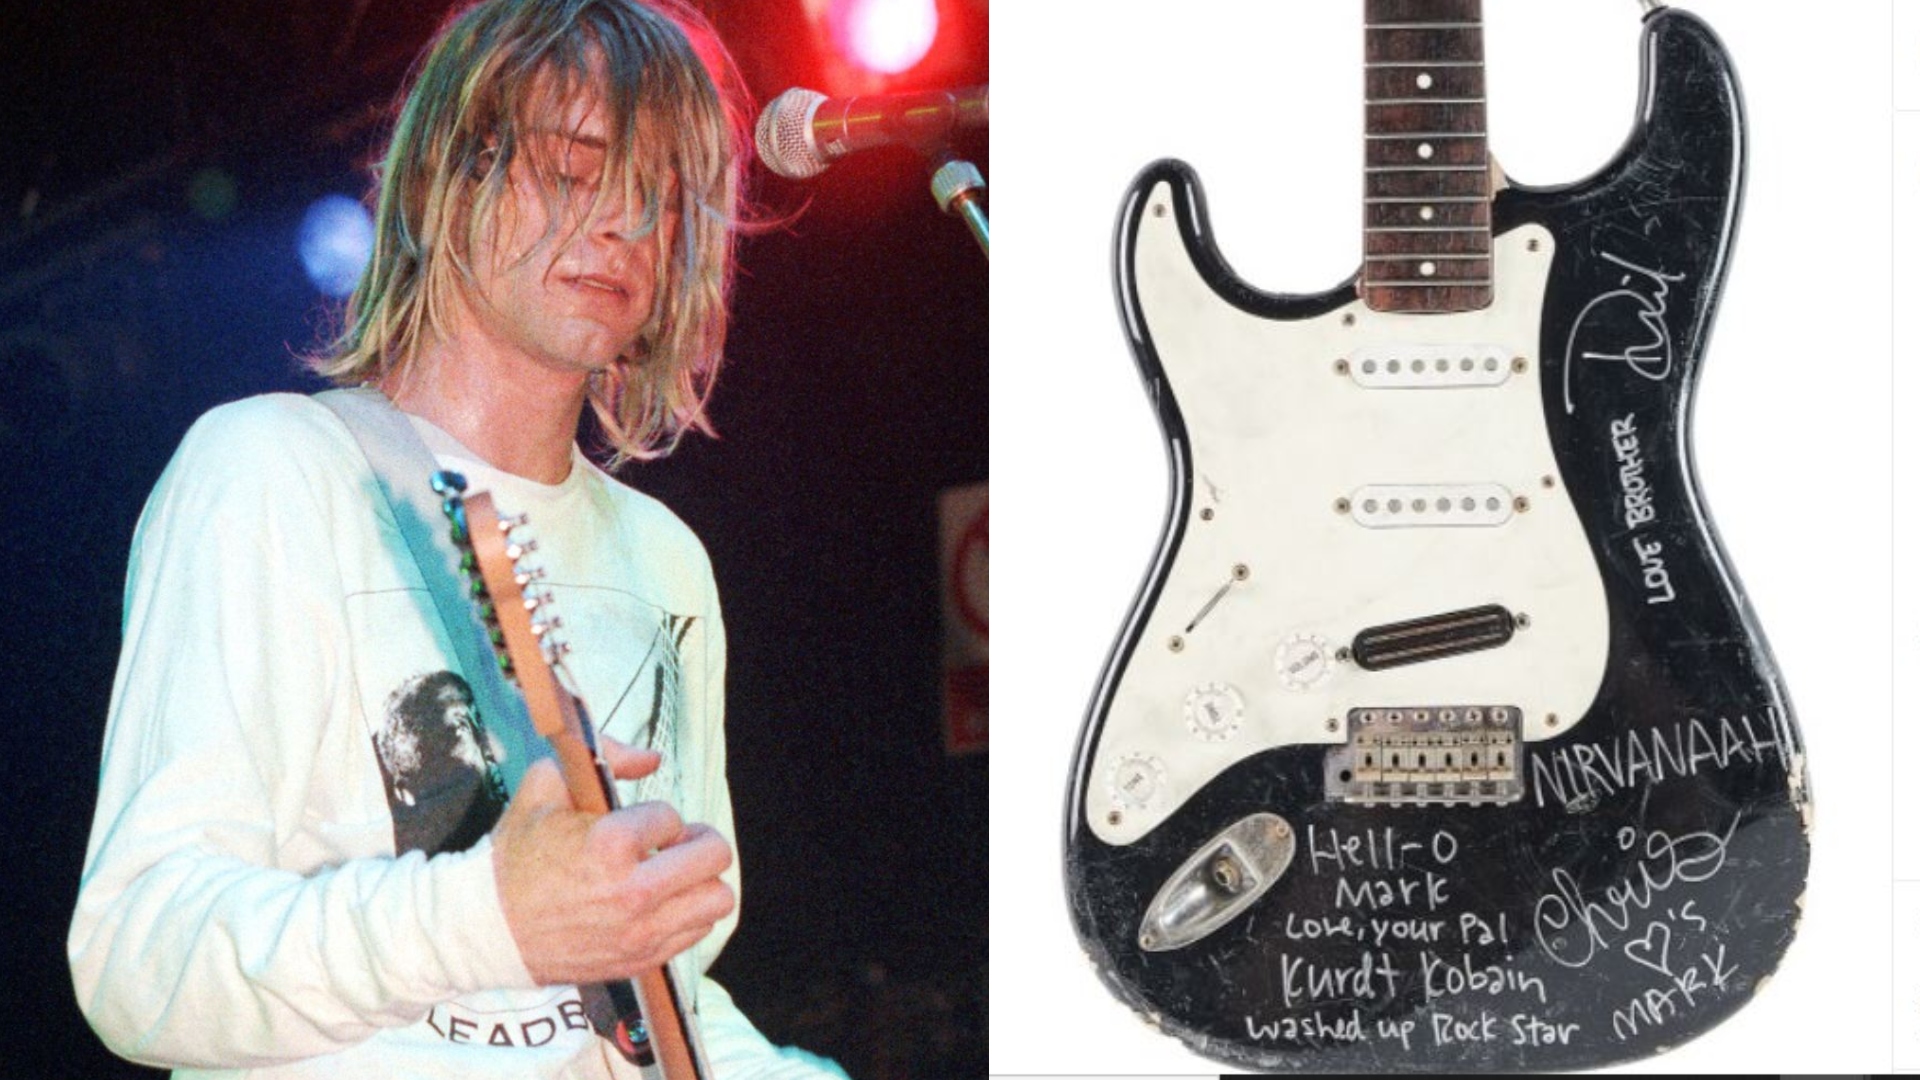 La guitarra que destrozó el cantante es de la marca Fender Stratocaster y fue rota a principios de los noventa.